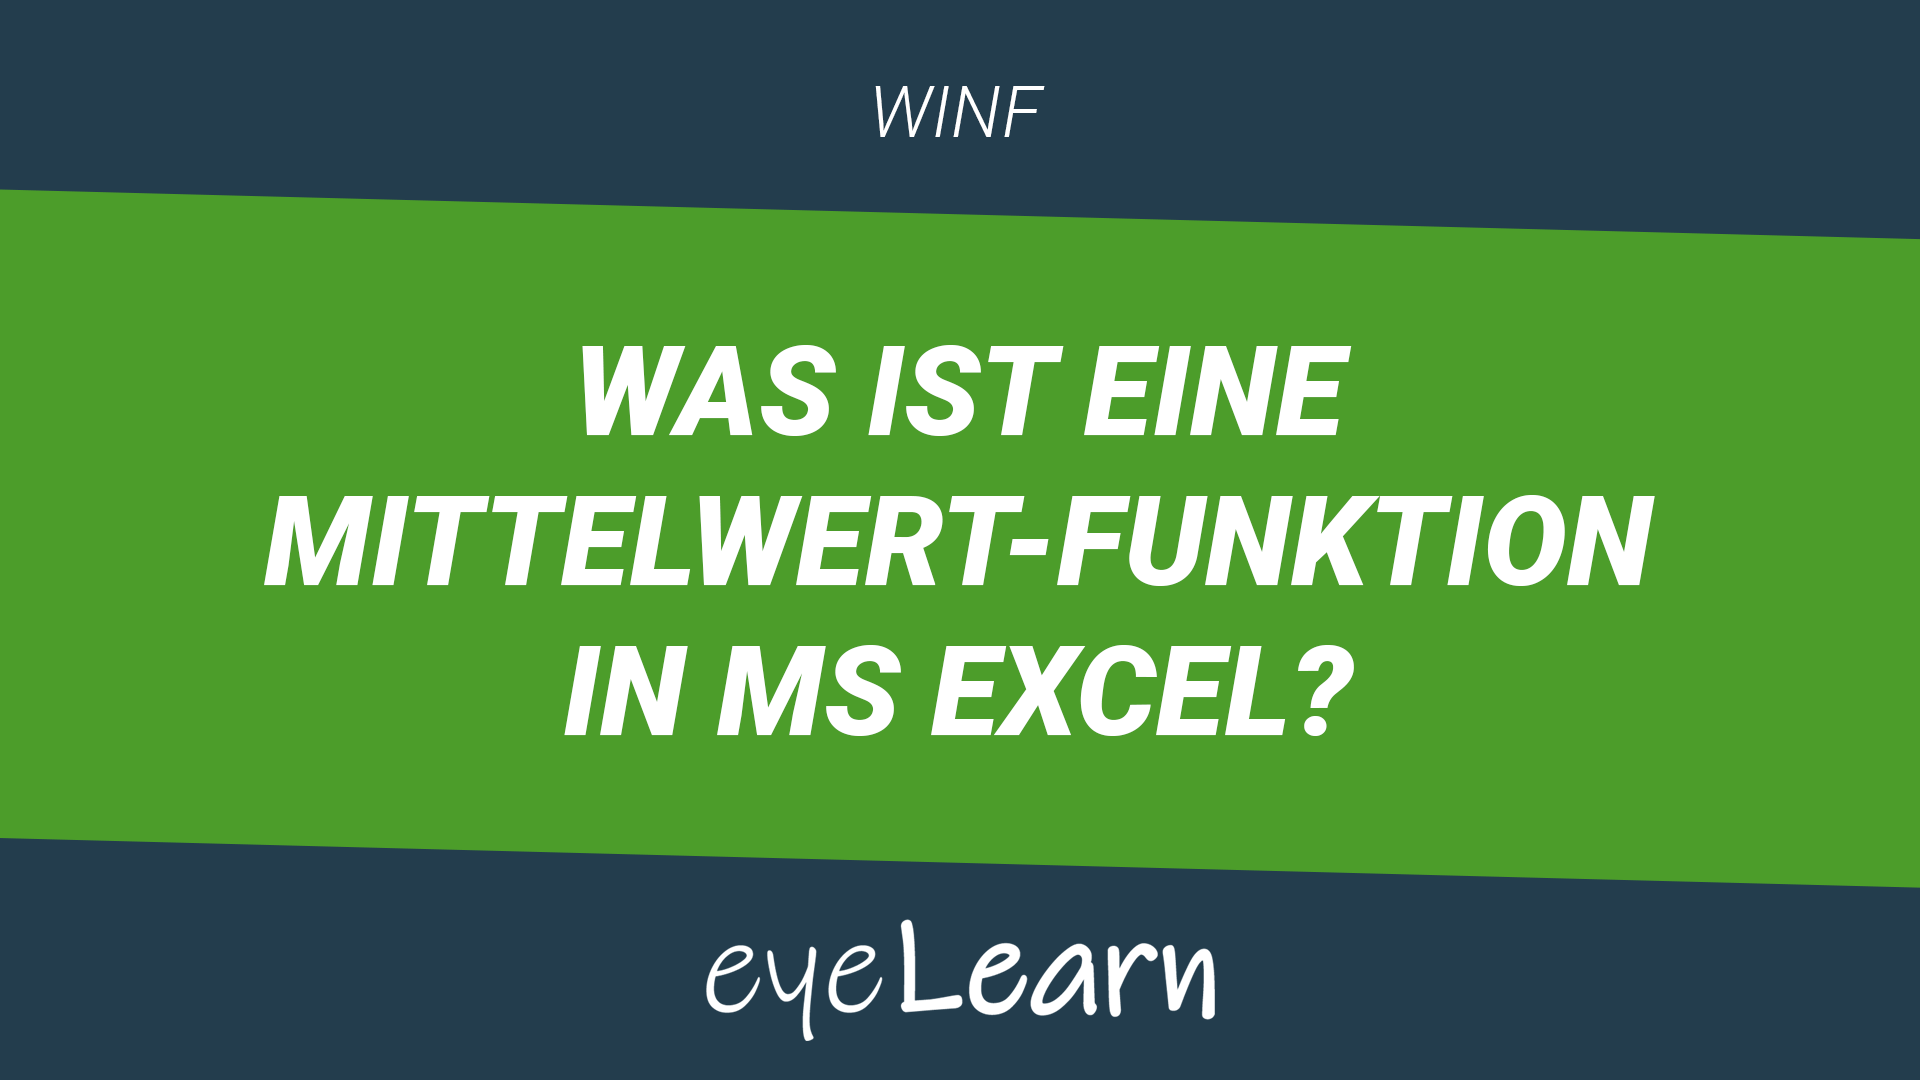 Was ist eine MITTELWERT-Funktion in MS Excel?